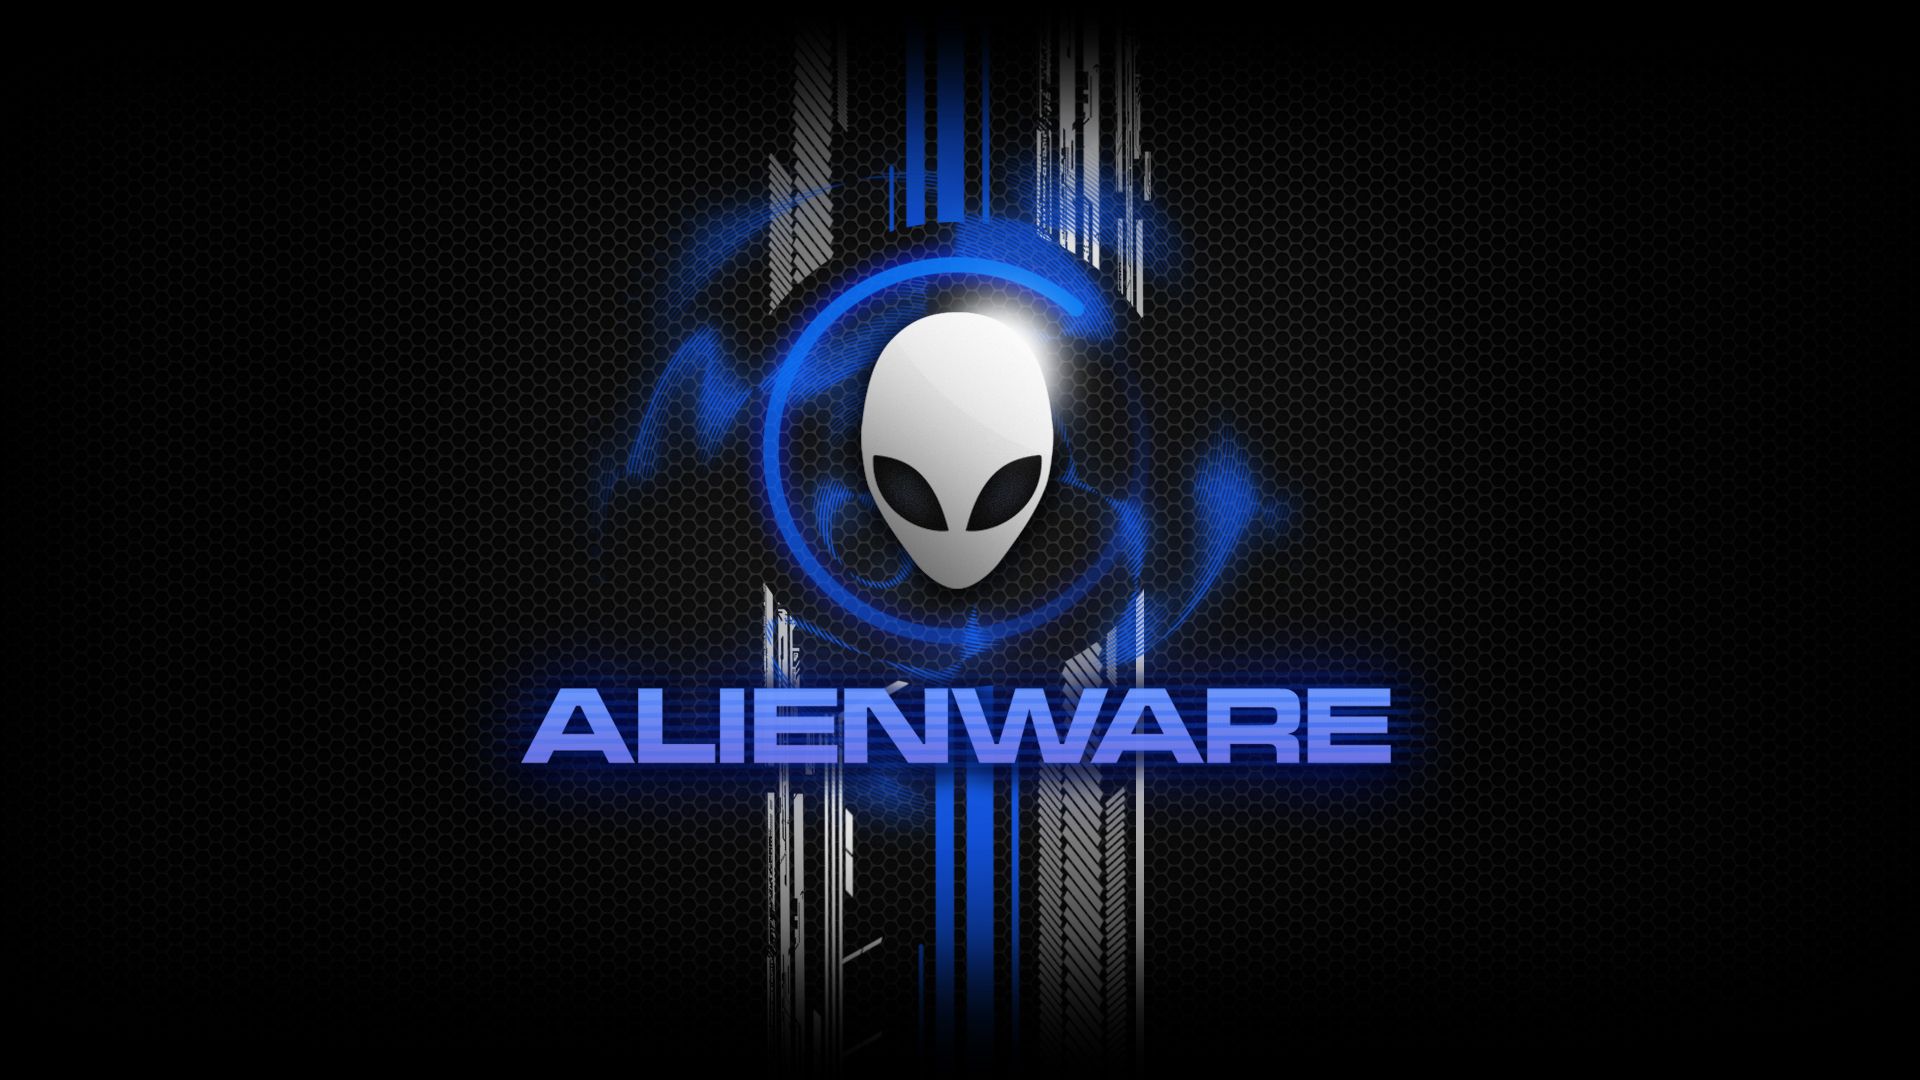 Alienware Desktop Background In Wallpaper